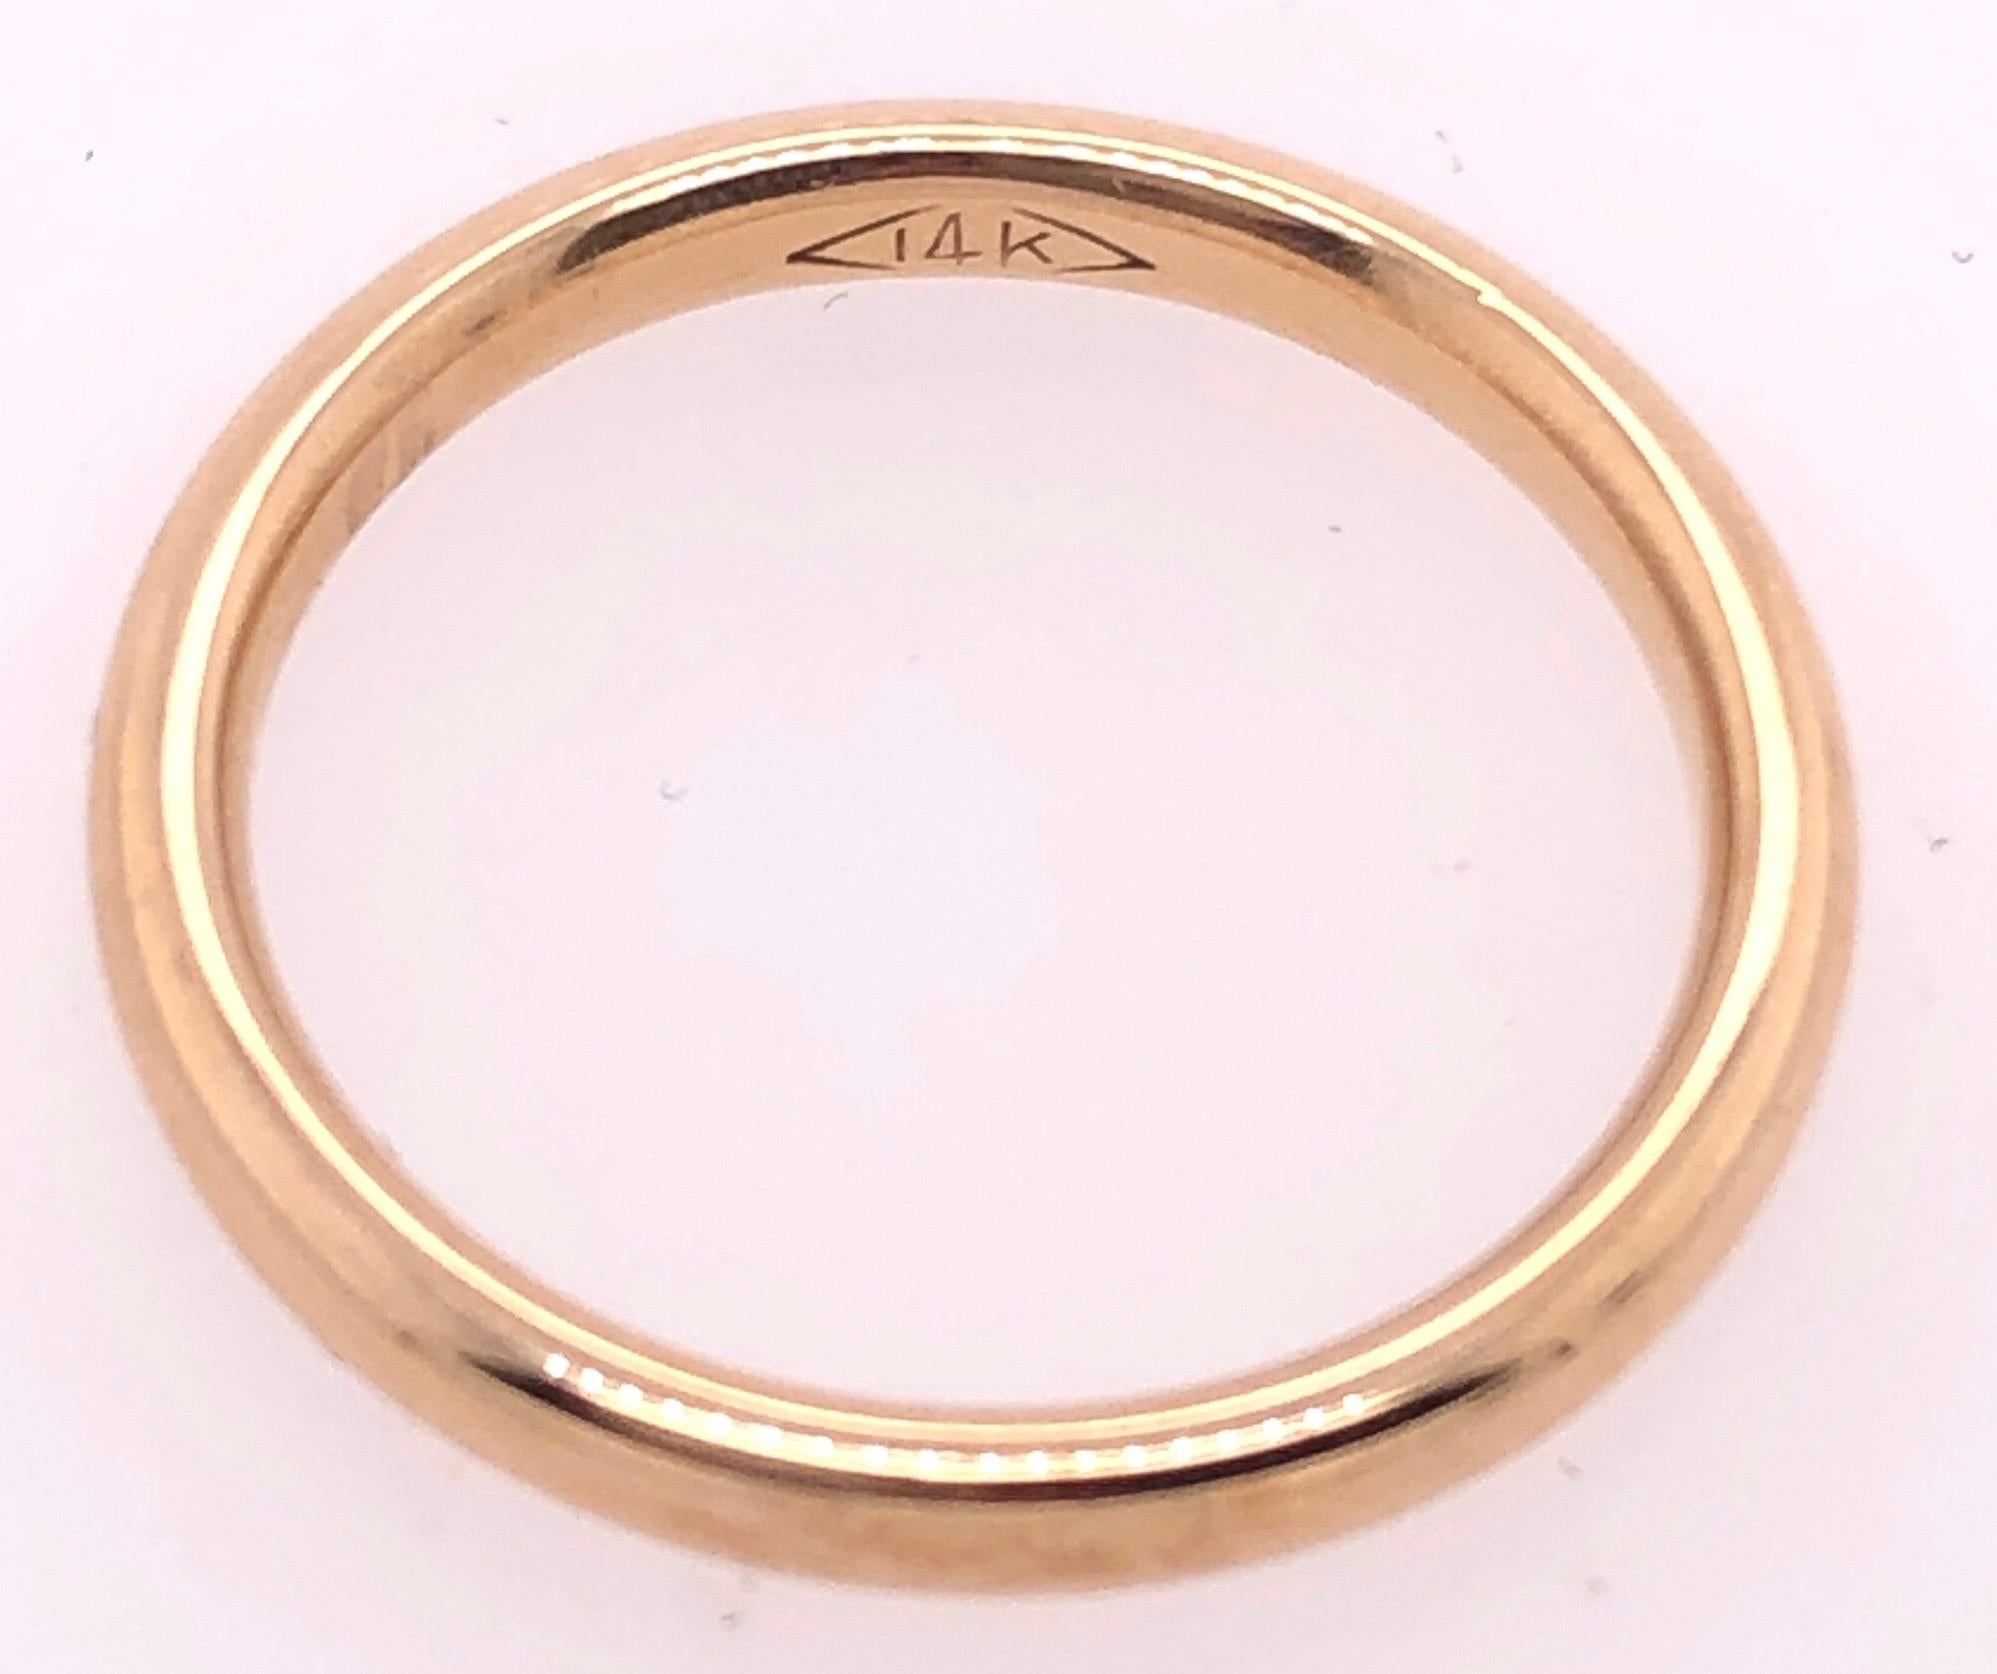 14 karat wedding ring